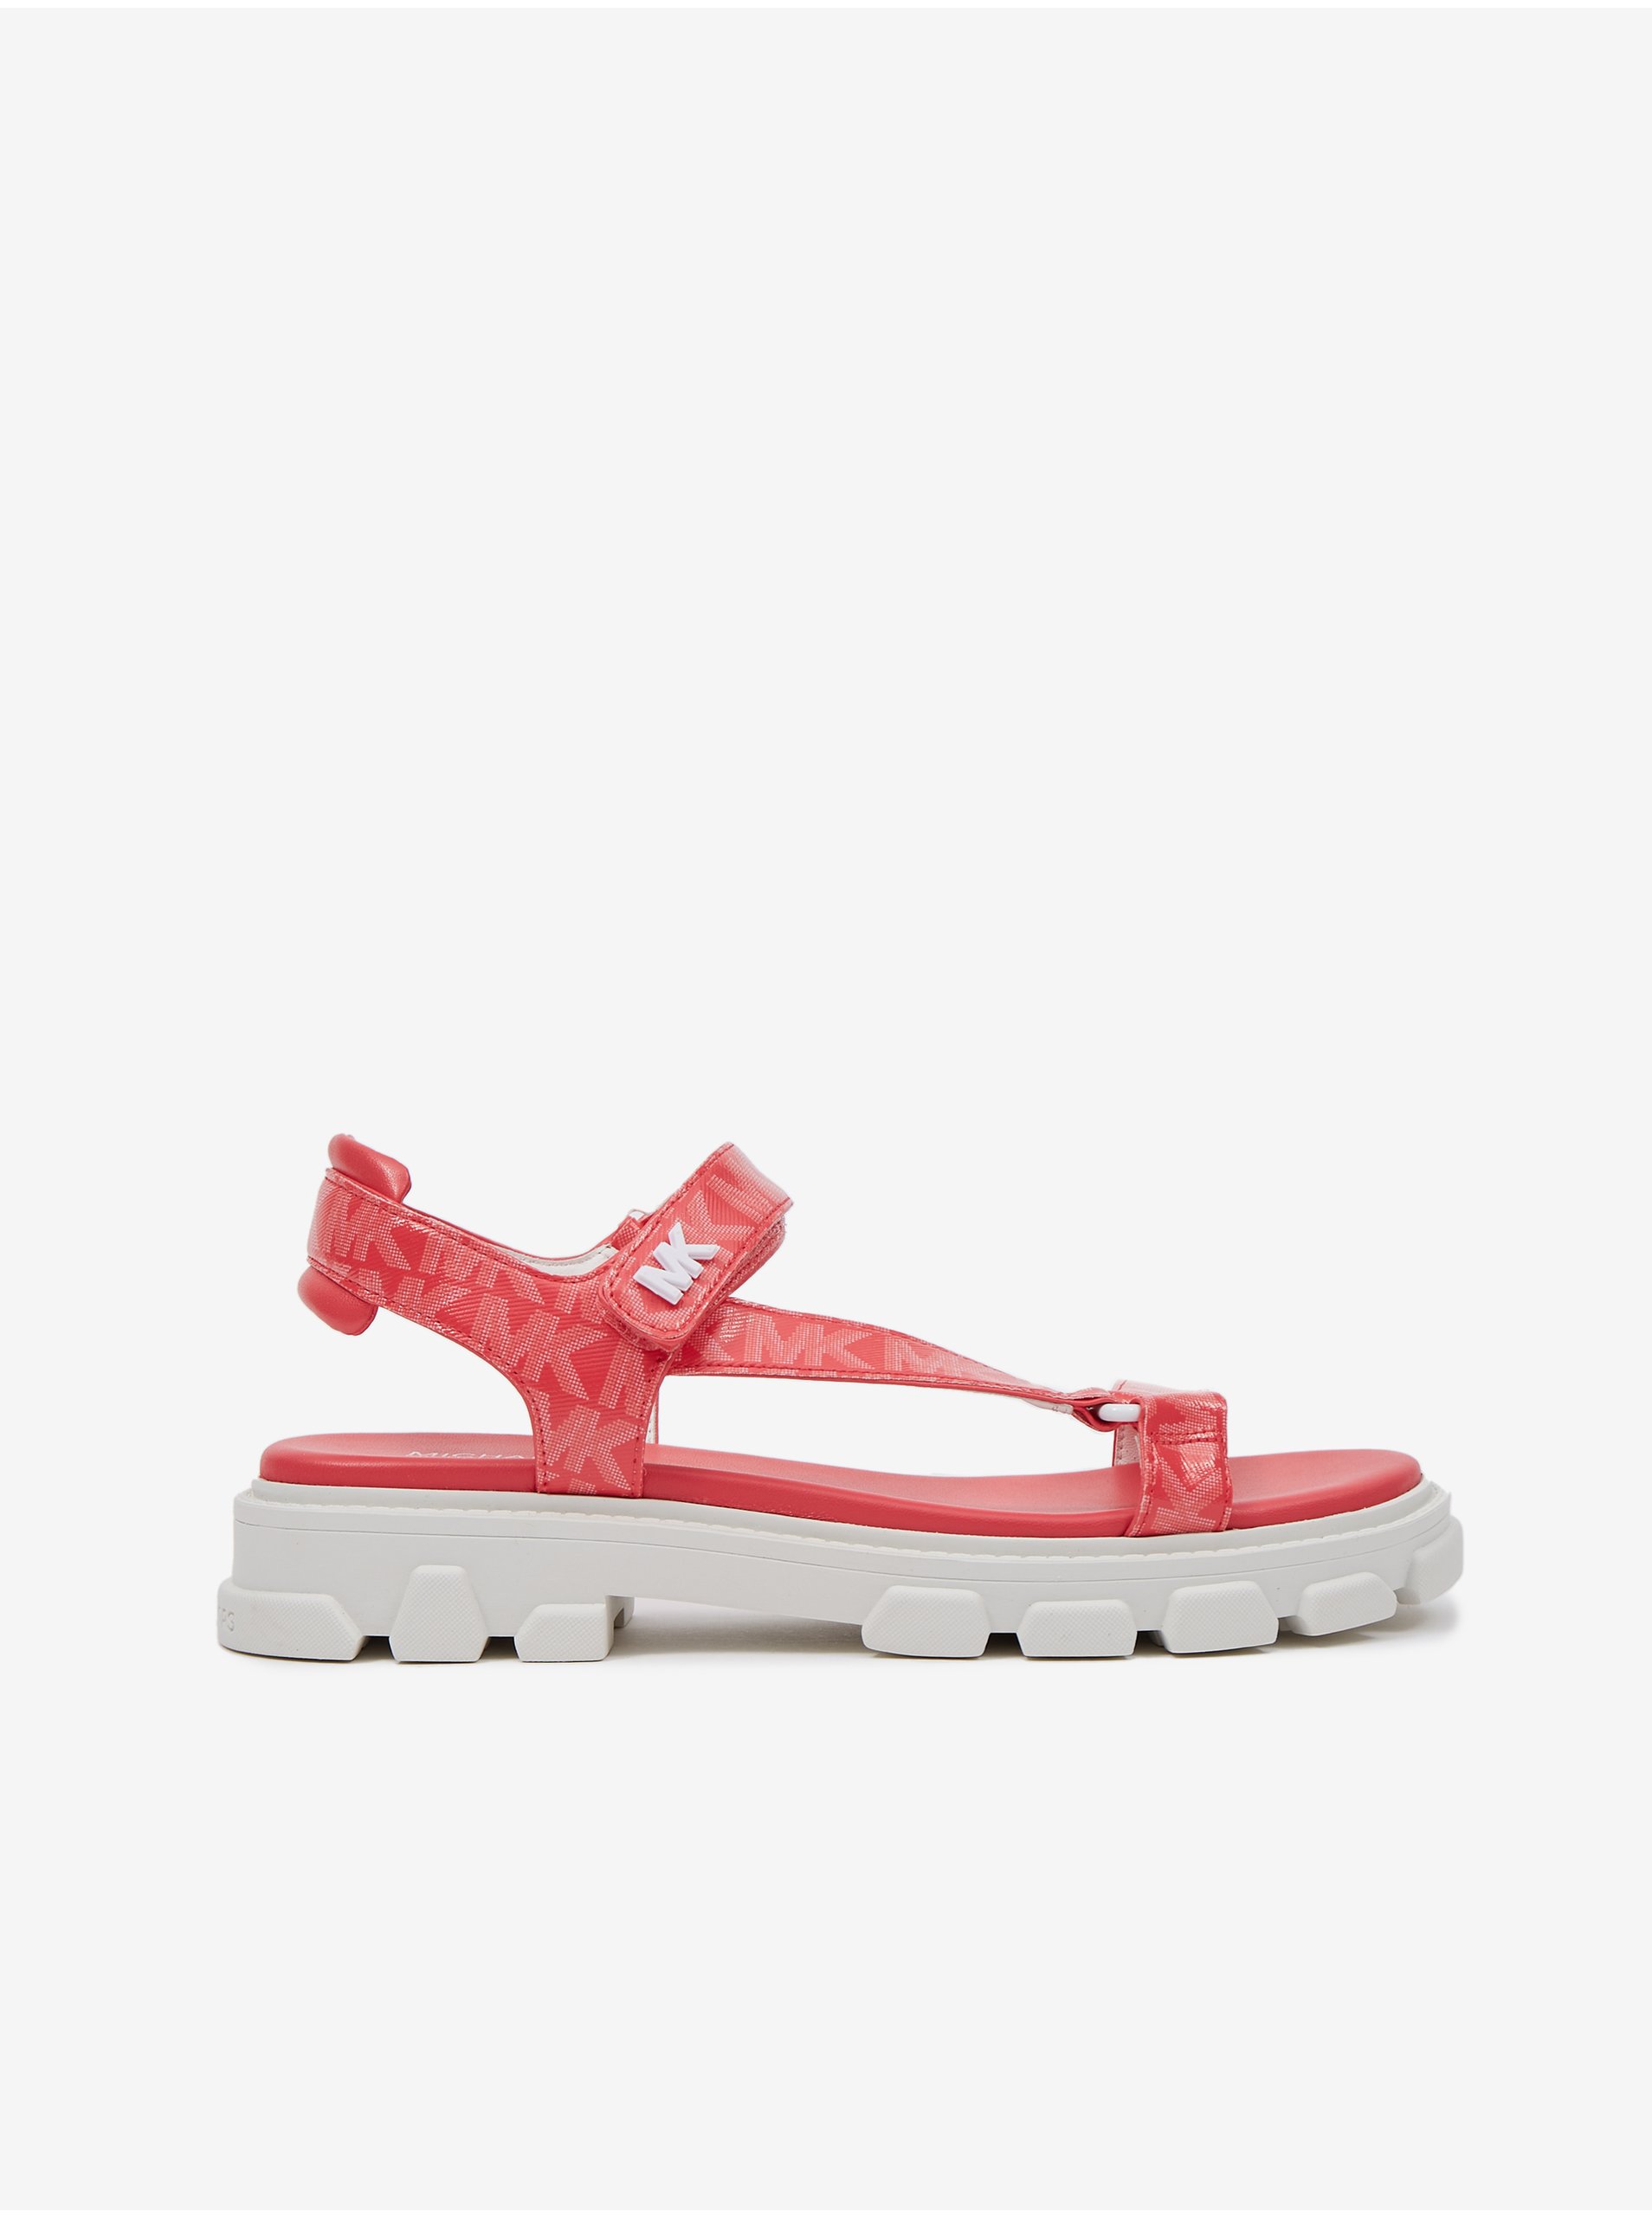 E-shop Koralové dámske vzorované sandále Michael Kors Ridley